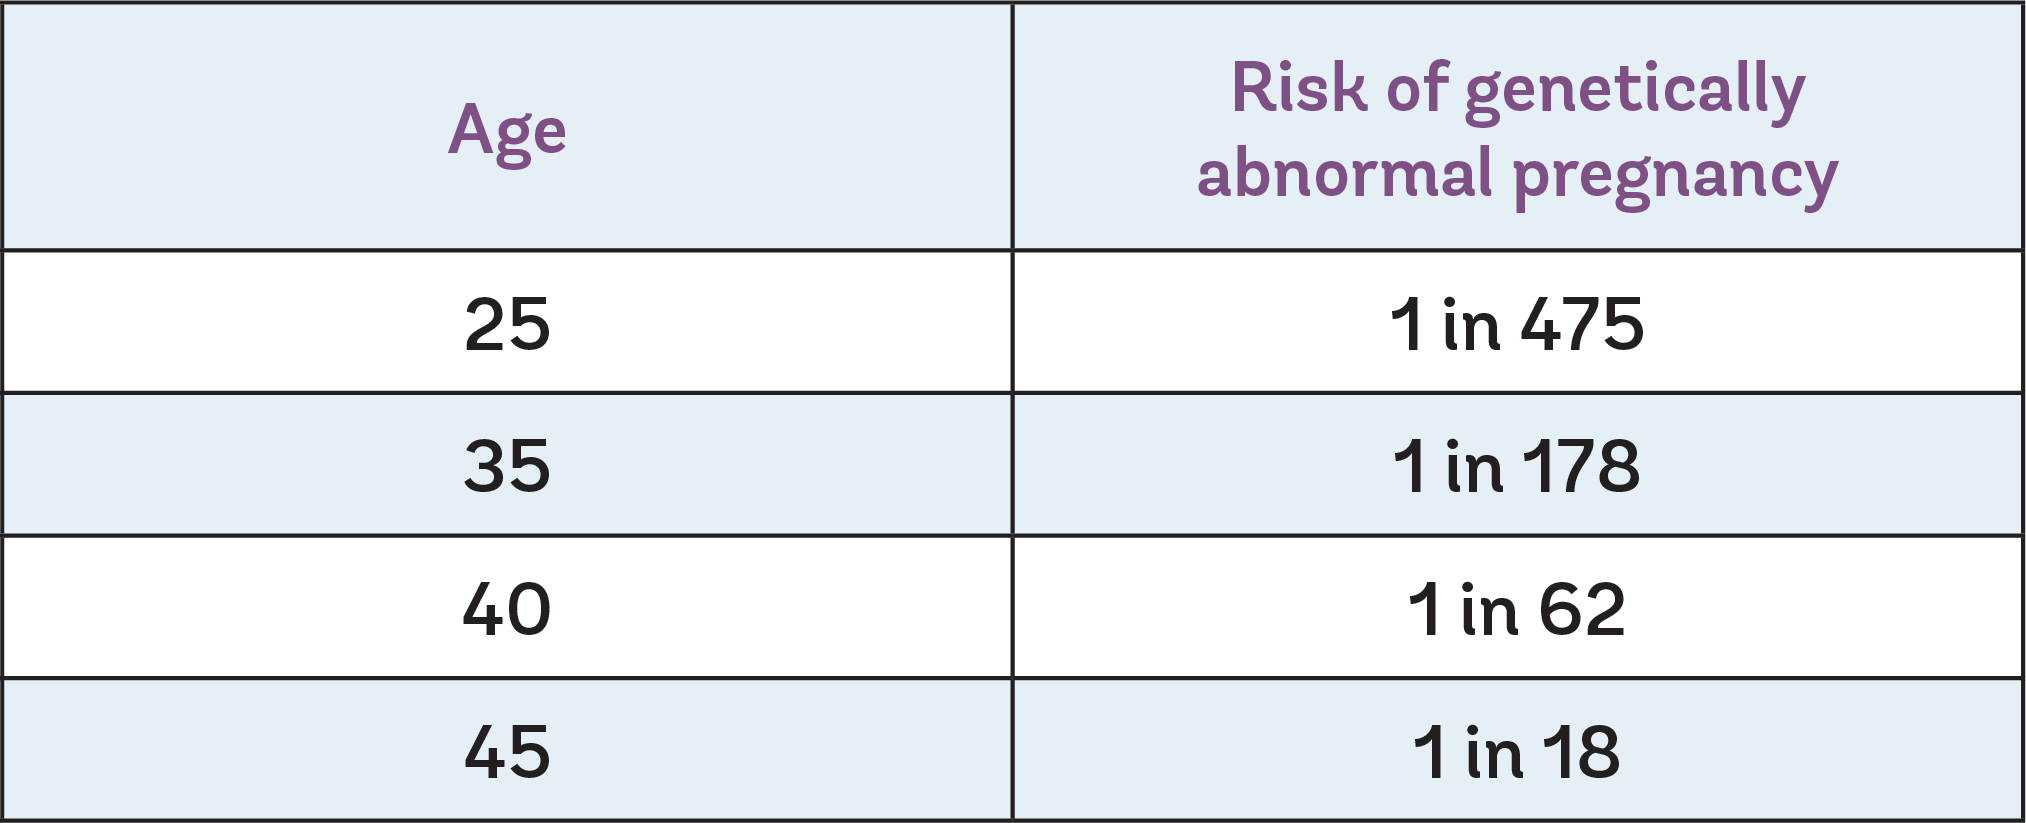 Risk of abnormal pregnancy